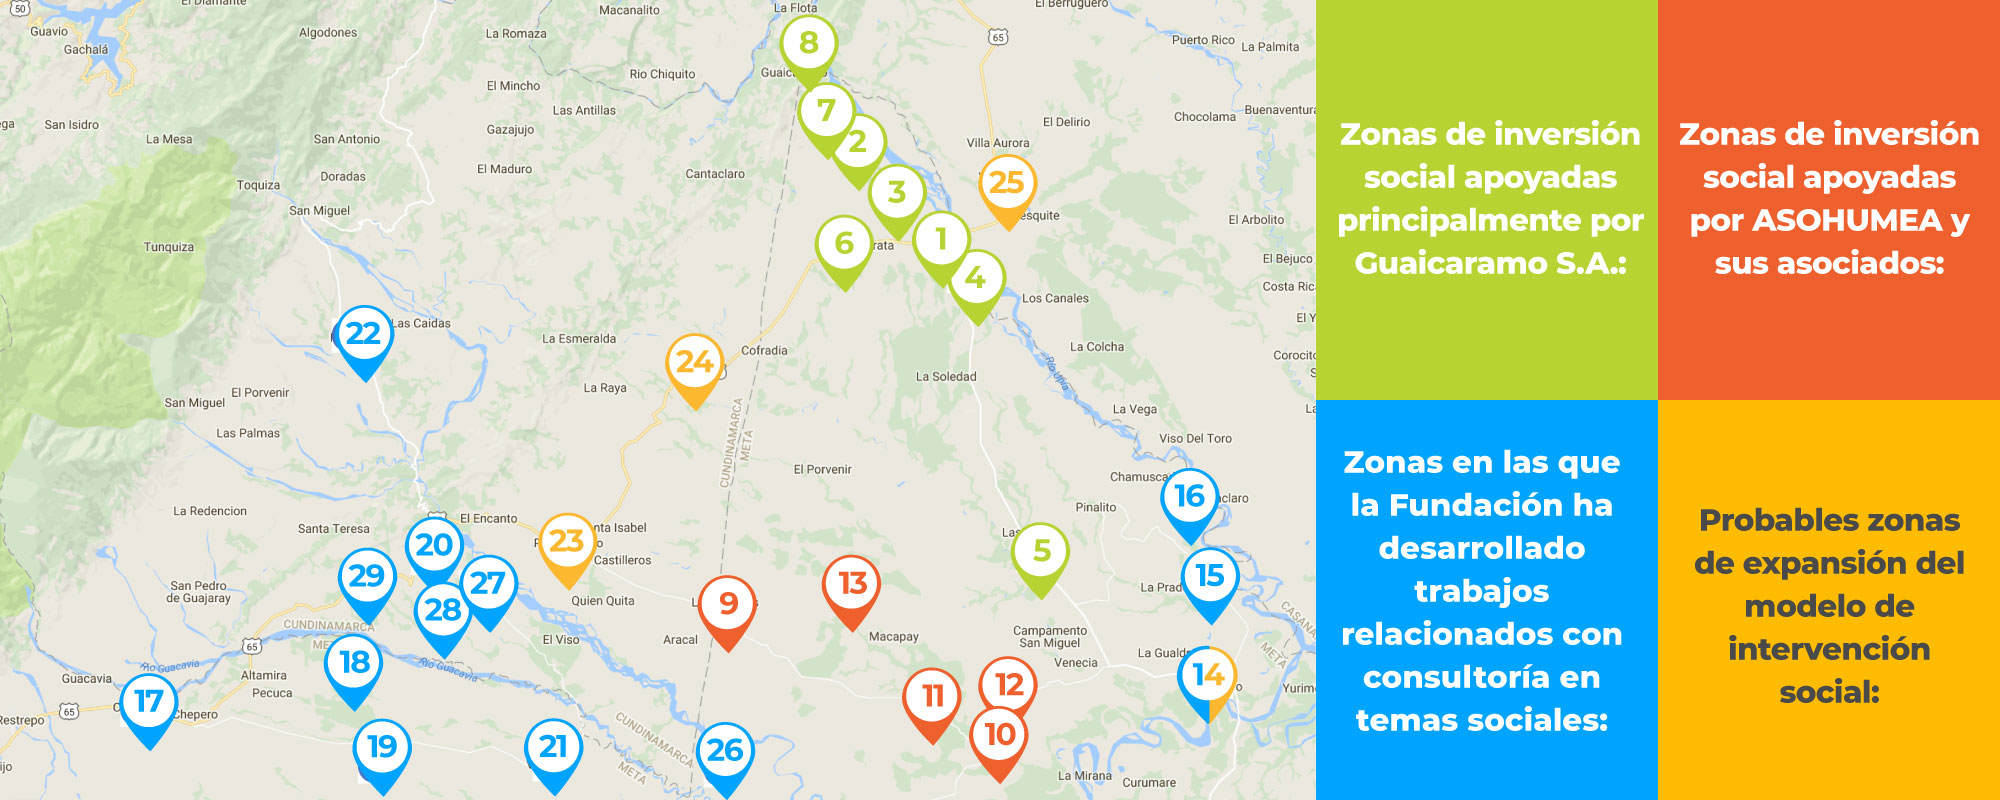 Imagen mapa Guaicaramo